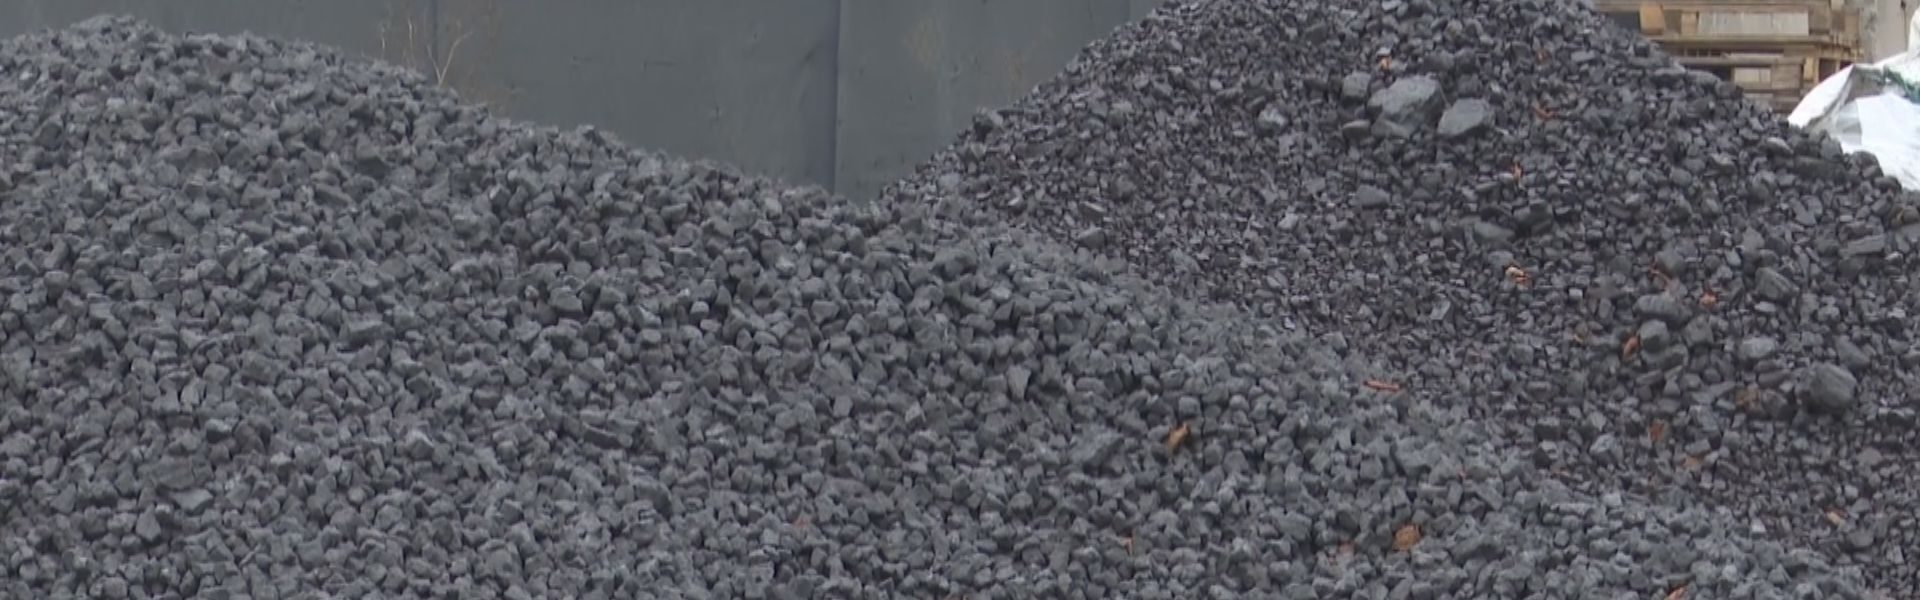 Tańszy węgiel na Górkach Przemysłowych